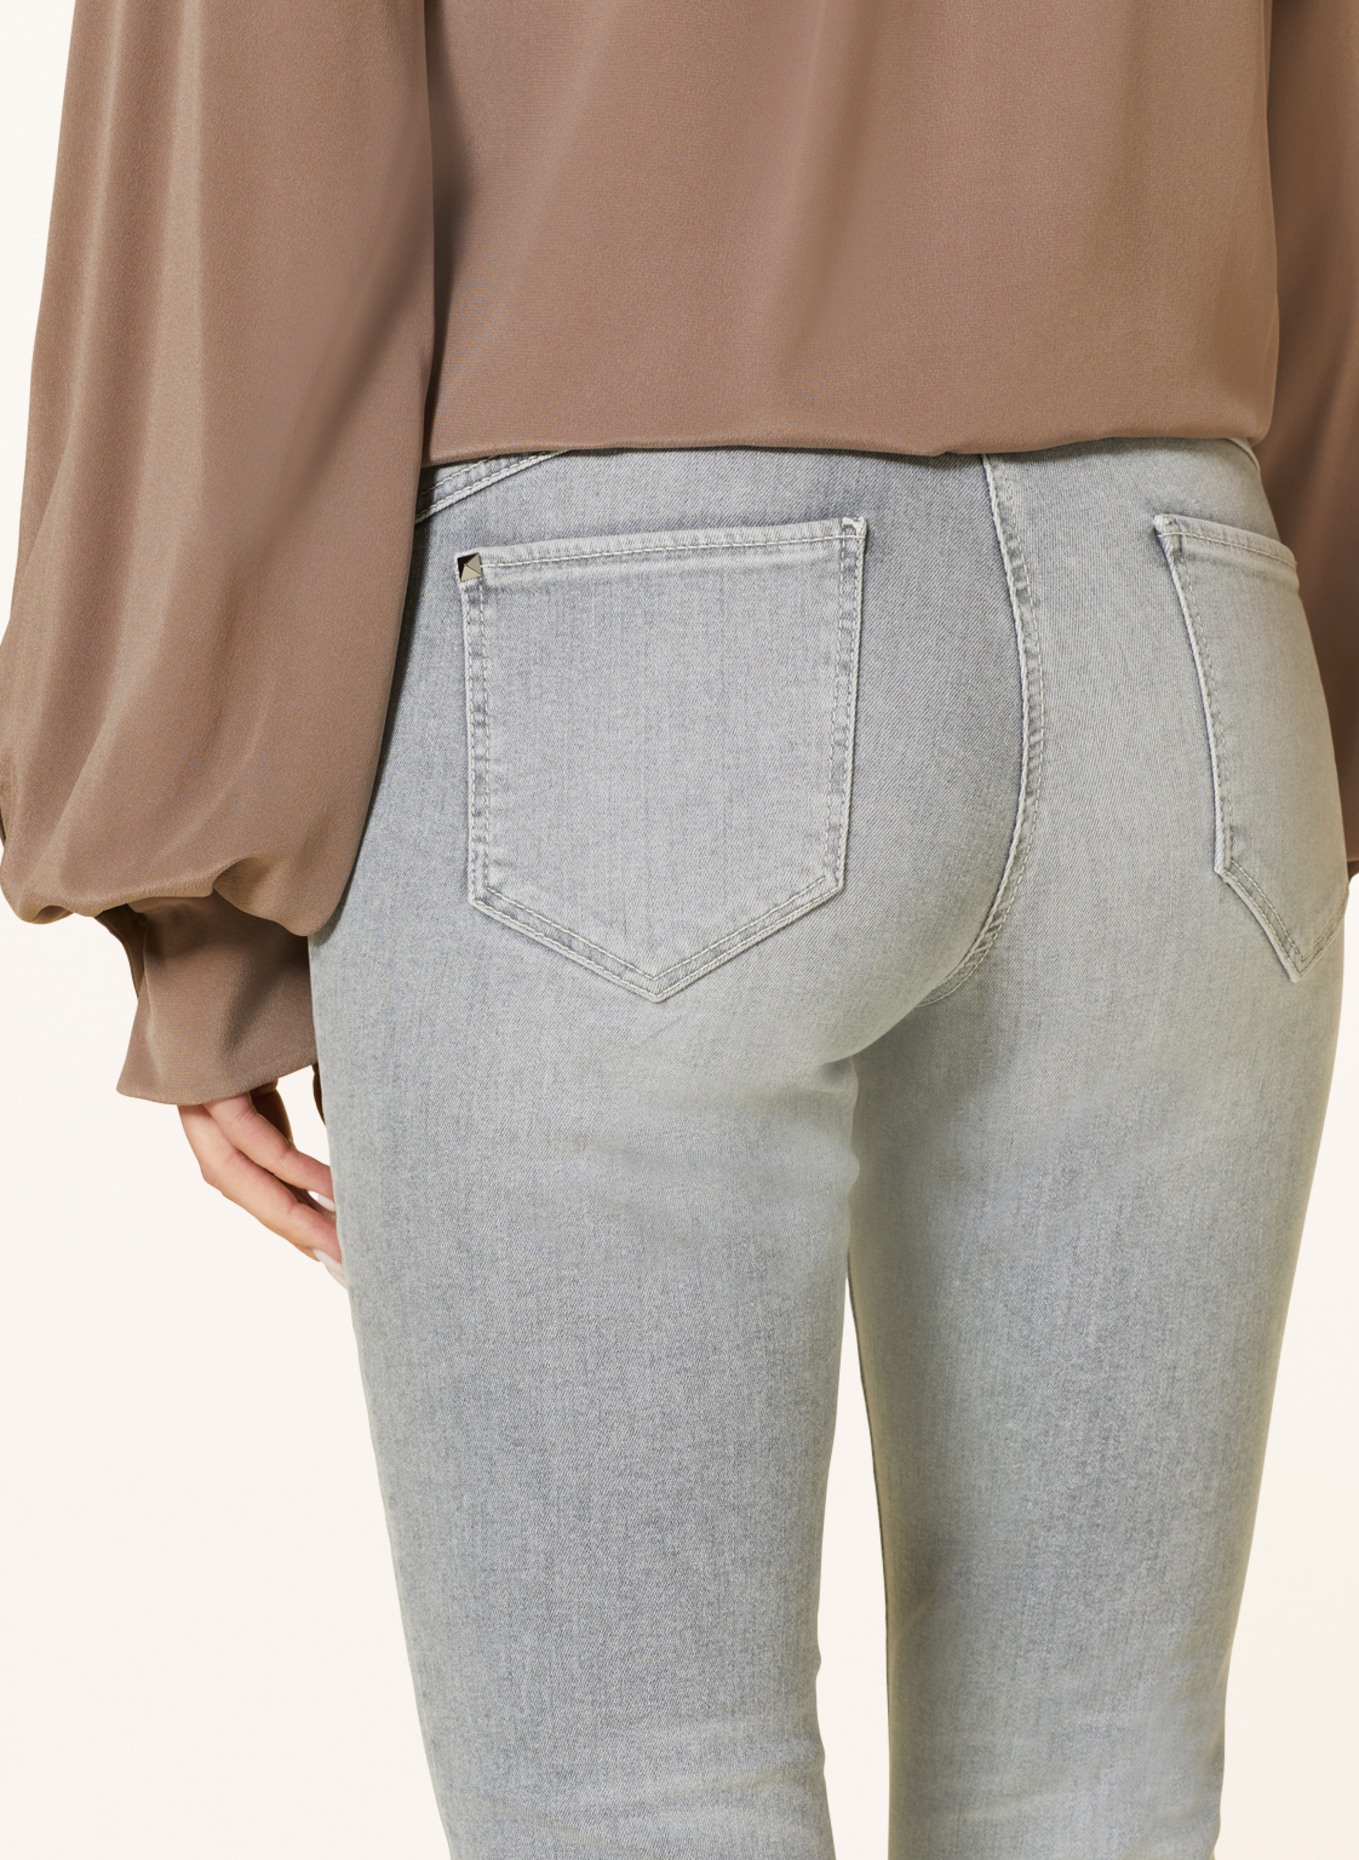 CAMBIO Skinny Jeans PARLA, Farbe: 5177 mid grey (Bild 5)